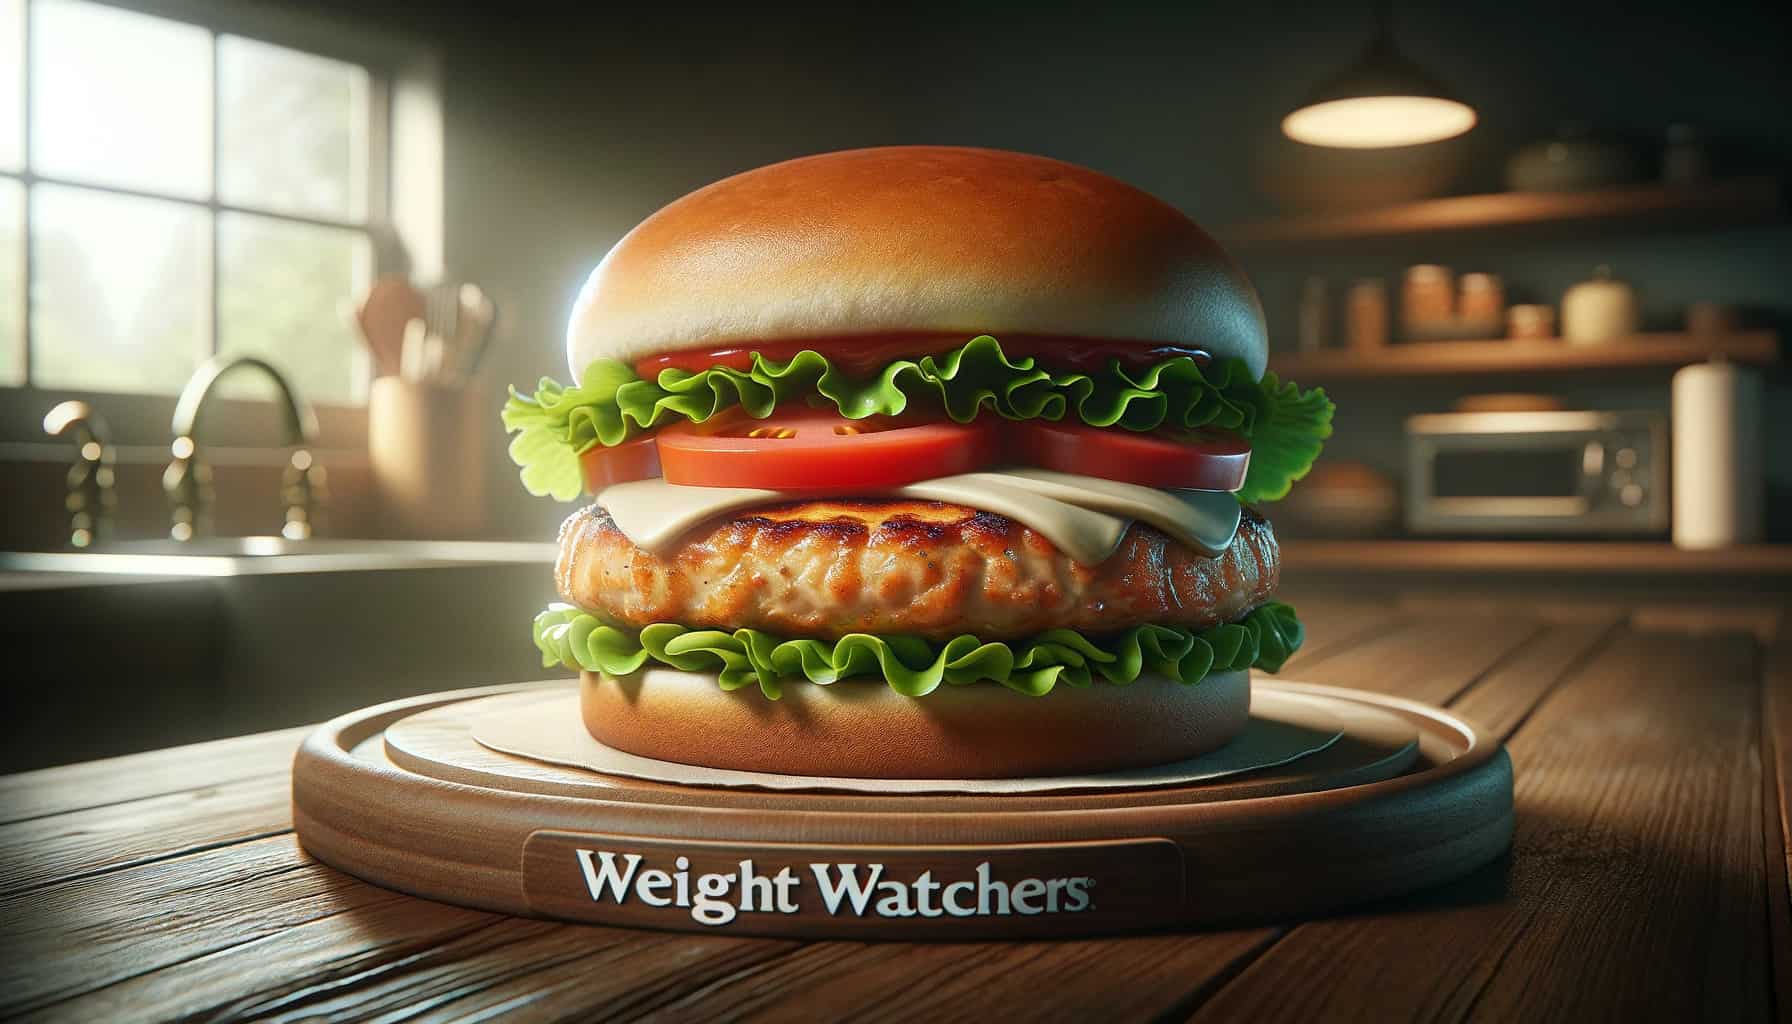 Weight watchers turkey burger